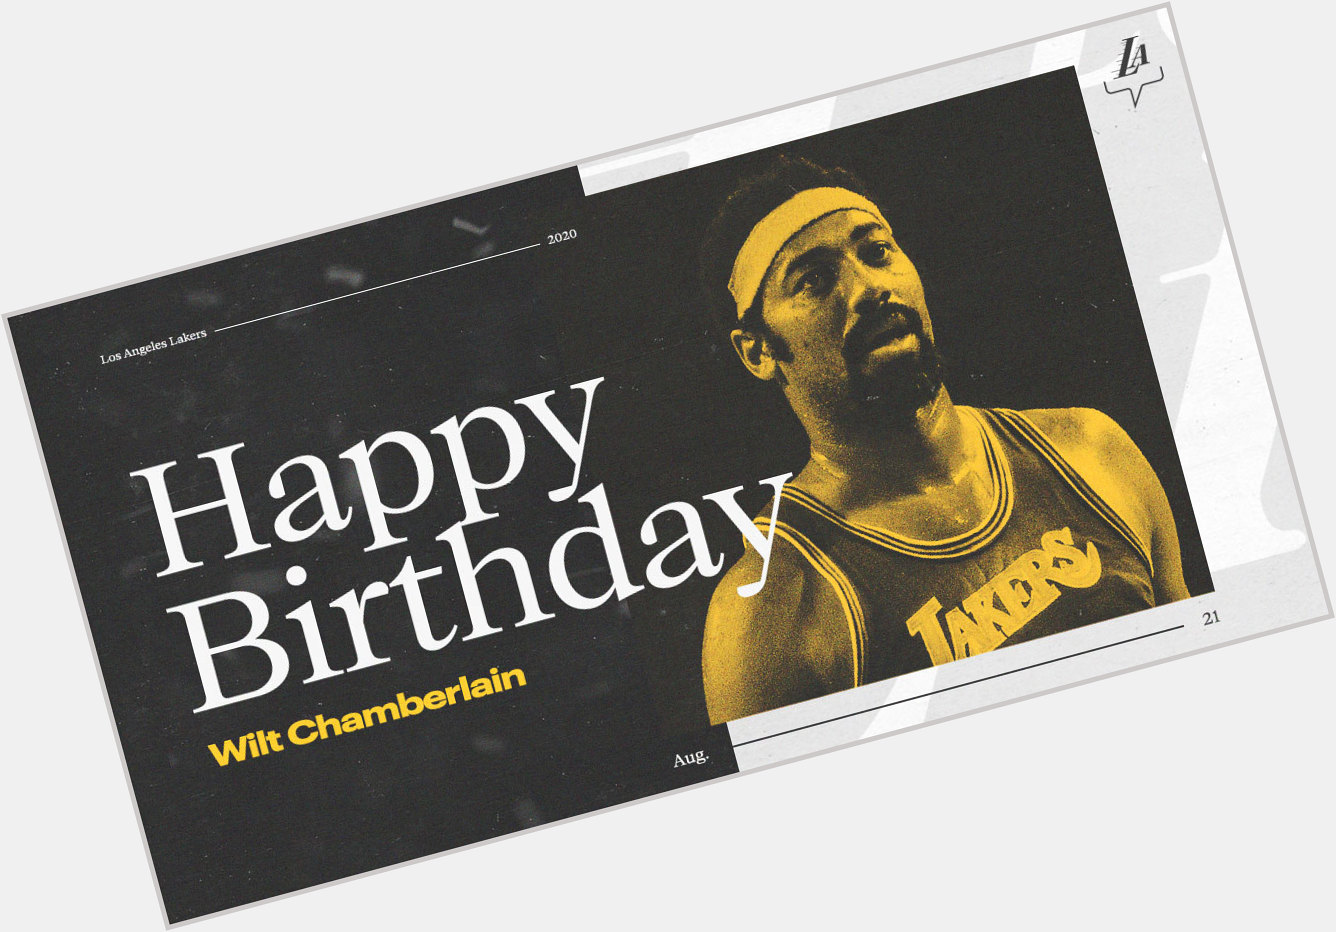 Happy birthday to this WRECKING BALL, Wilt Chamberlain 